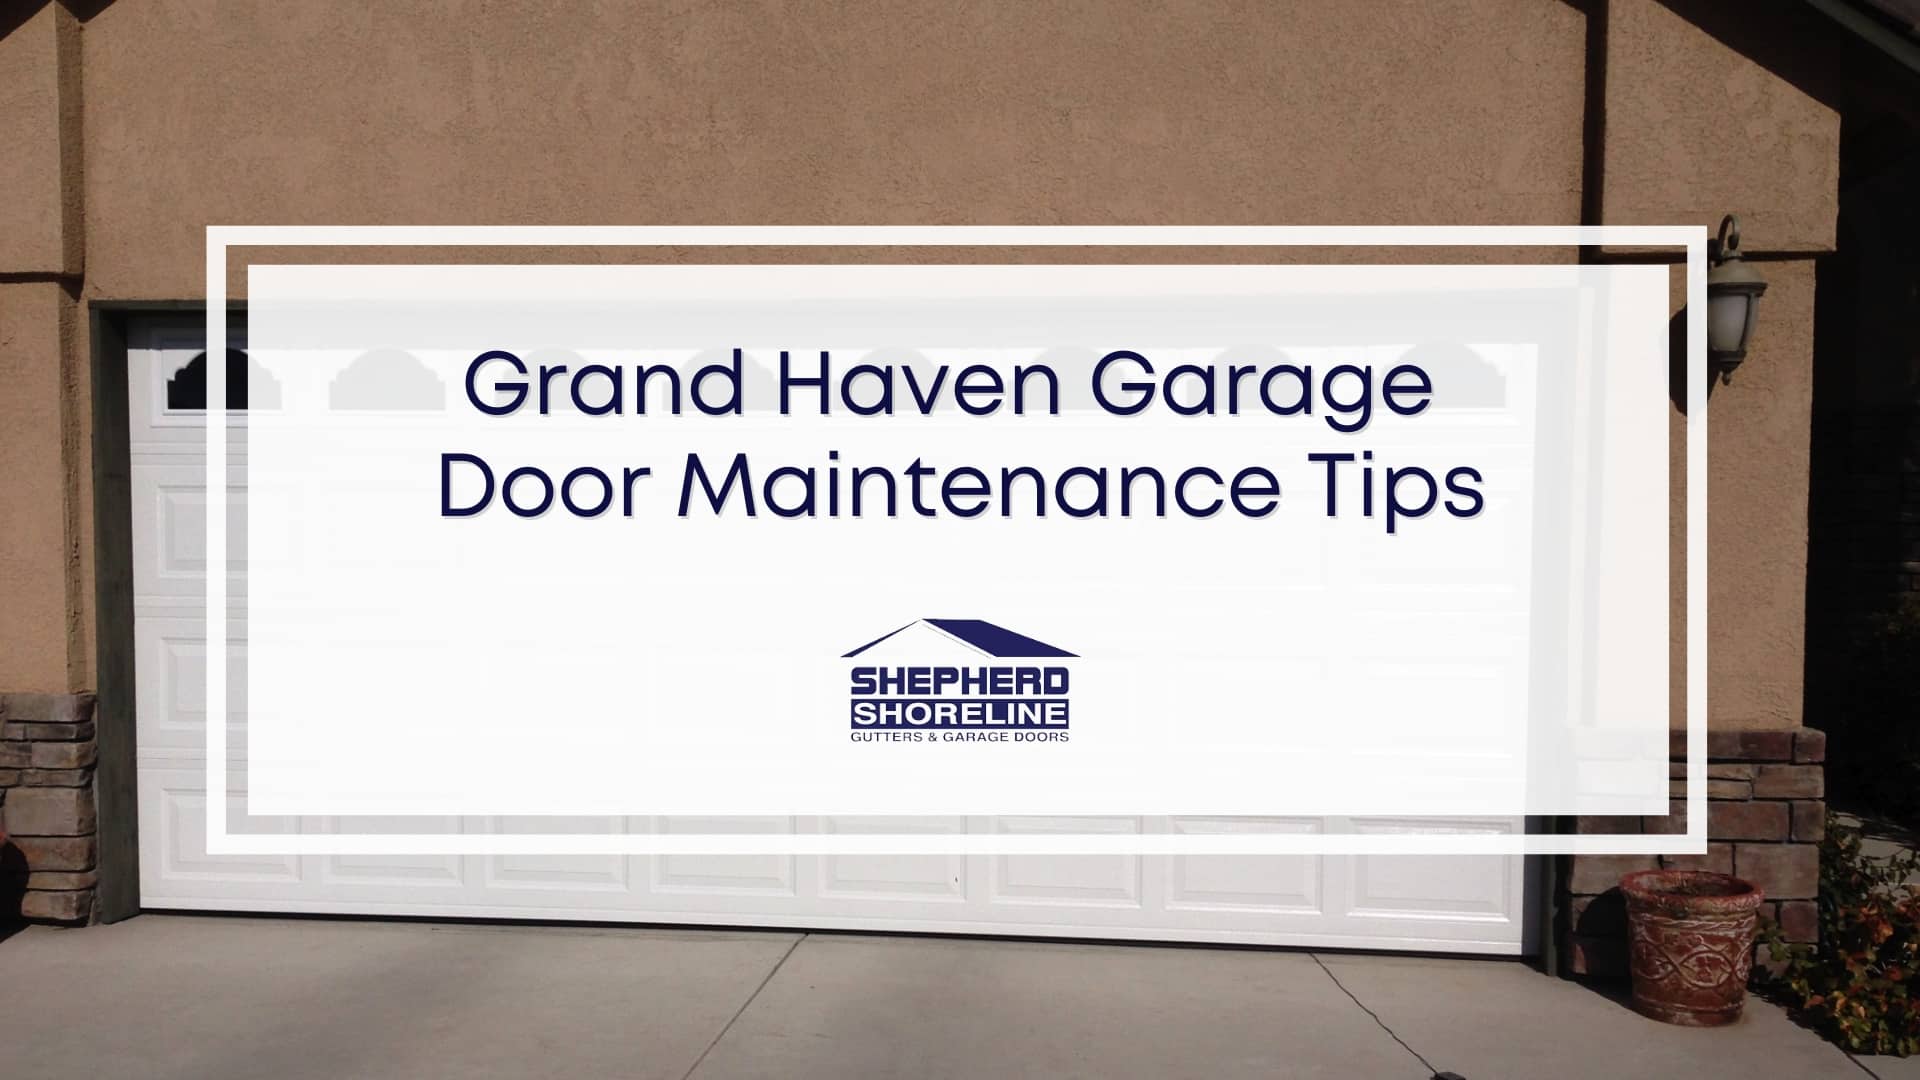 Featured image of Grand Haven garage door maintenance tips